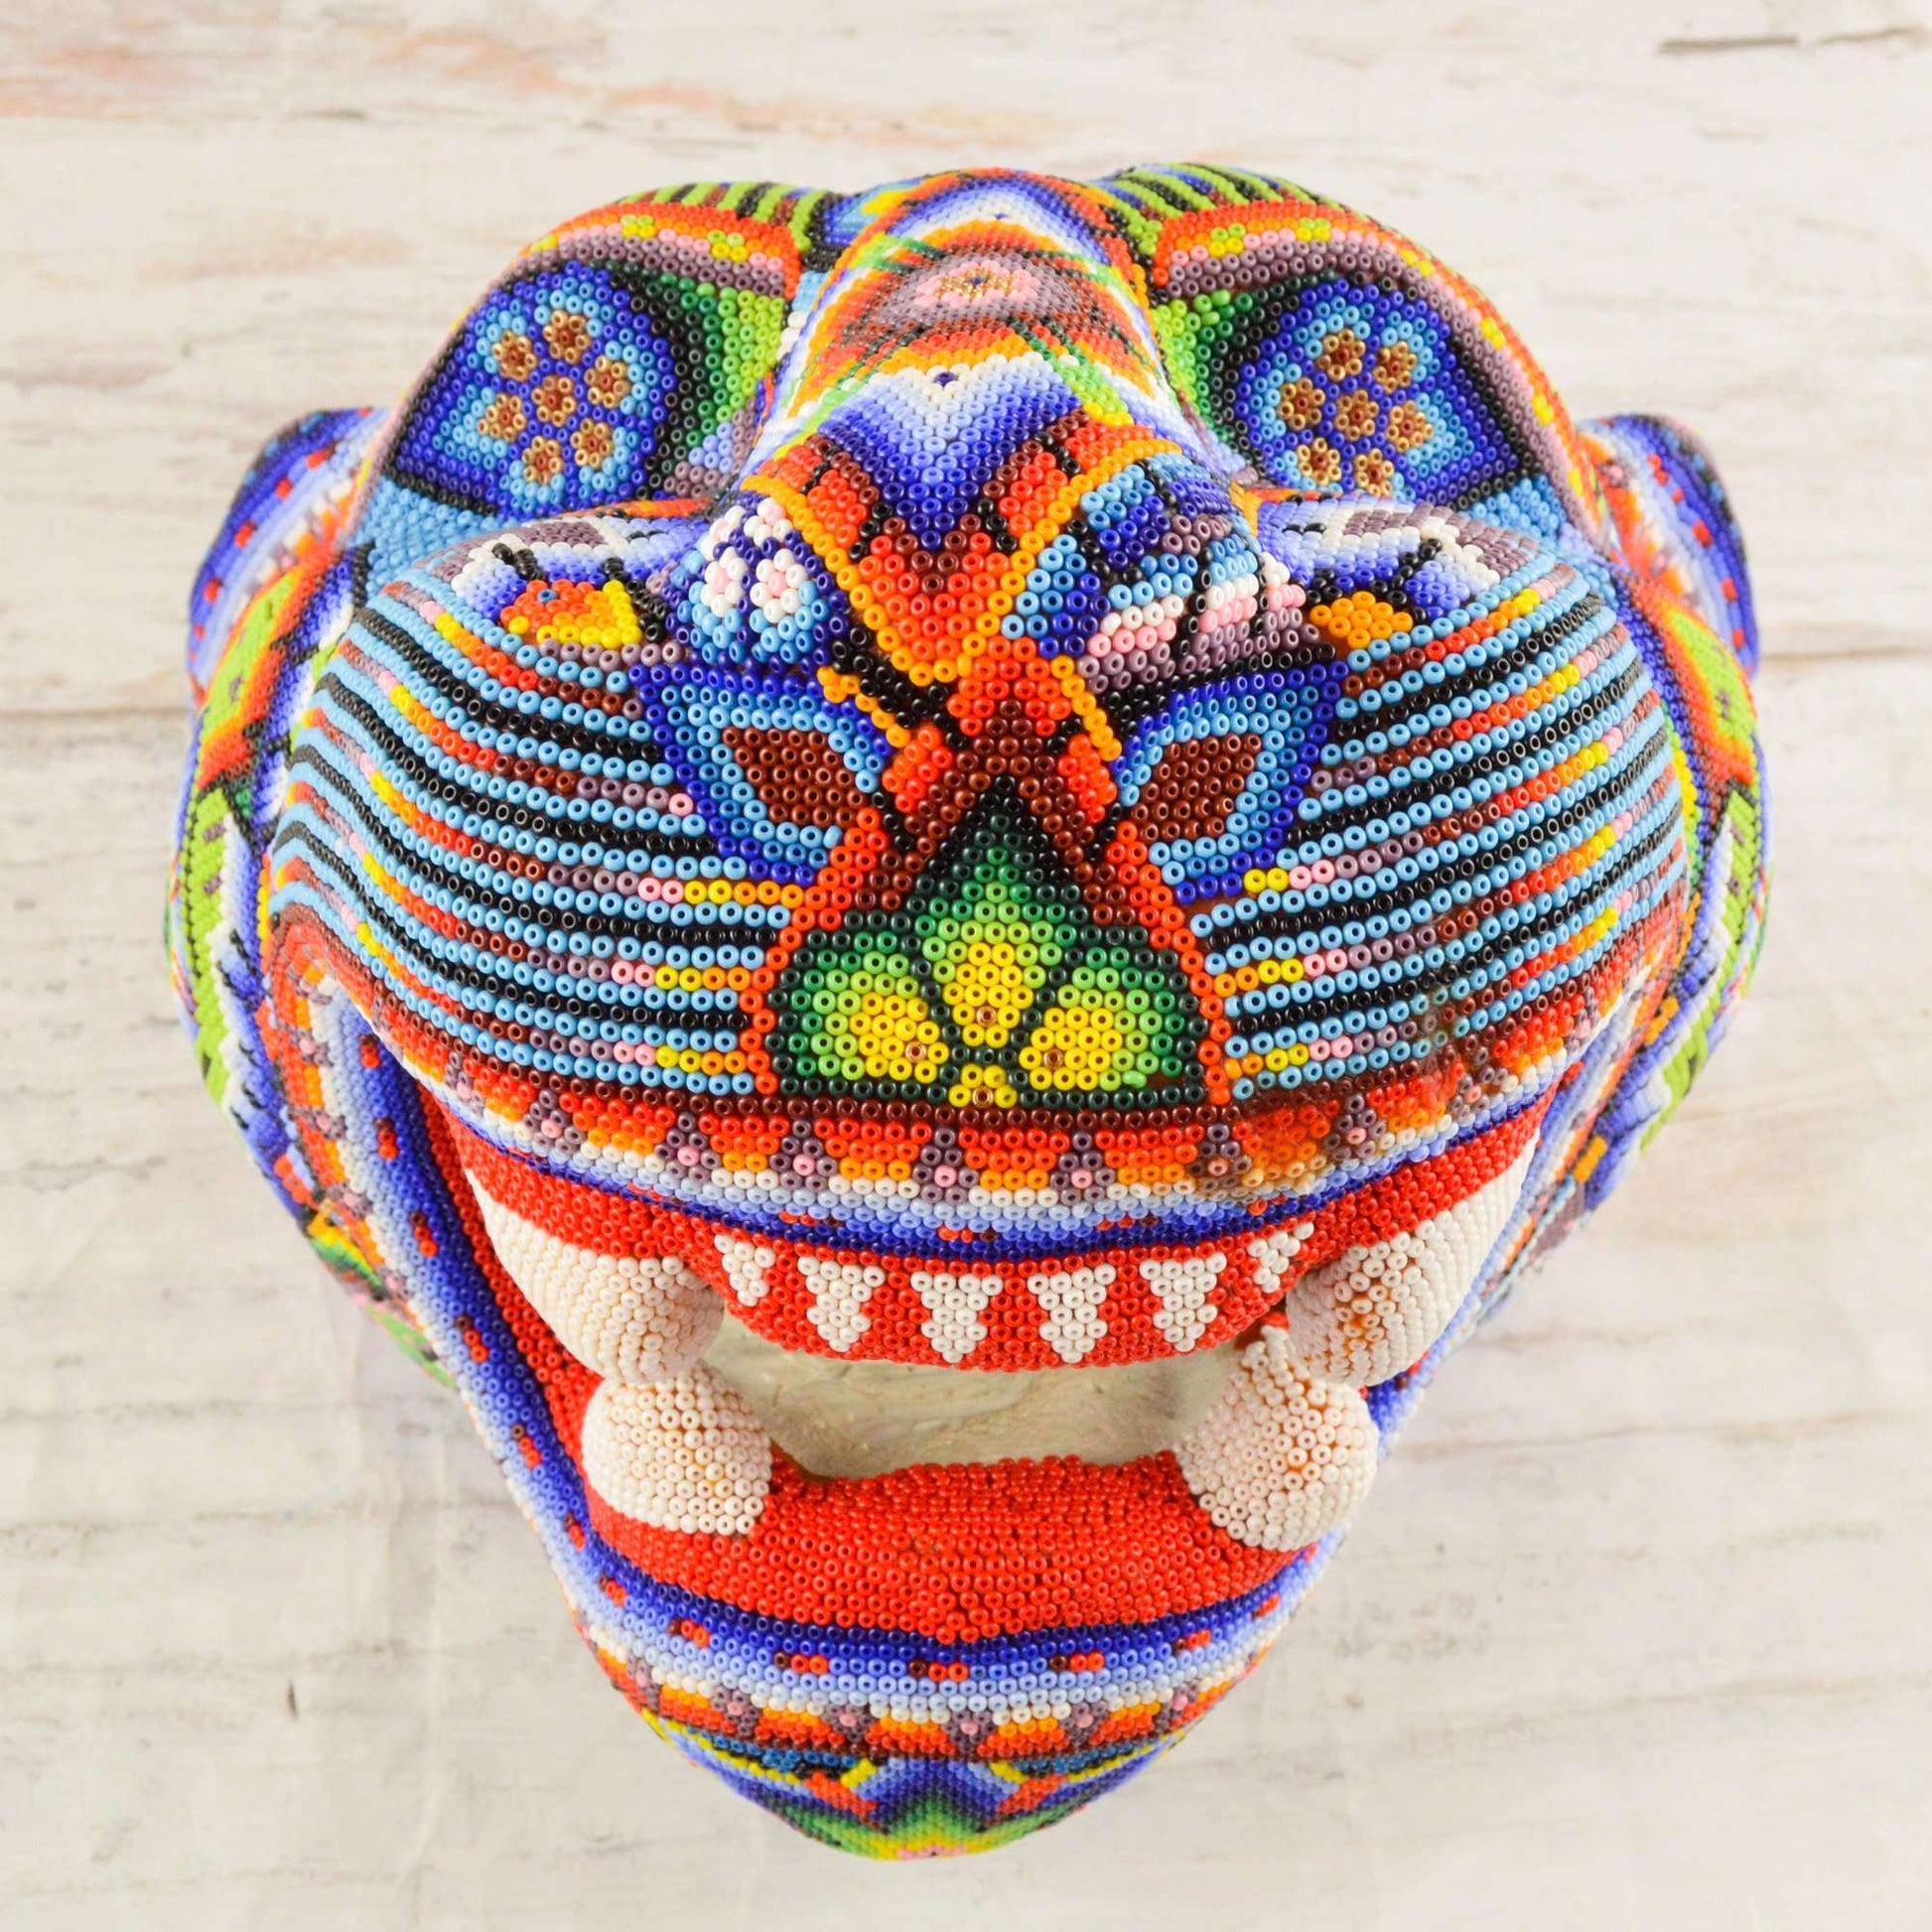 Jaguar Head Huichol Art - Alebrije Huichol Mexican Folk art magiamexica.com